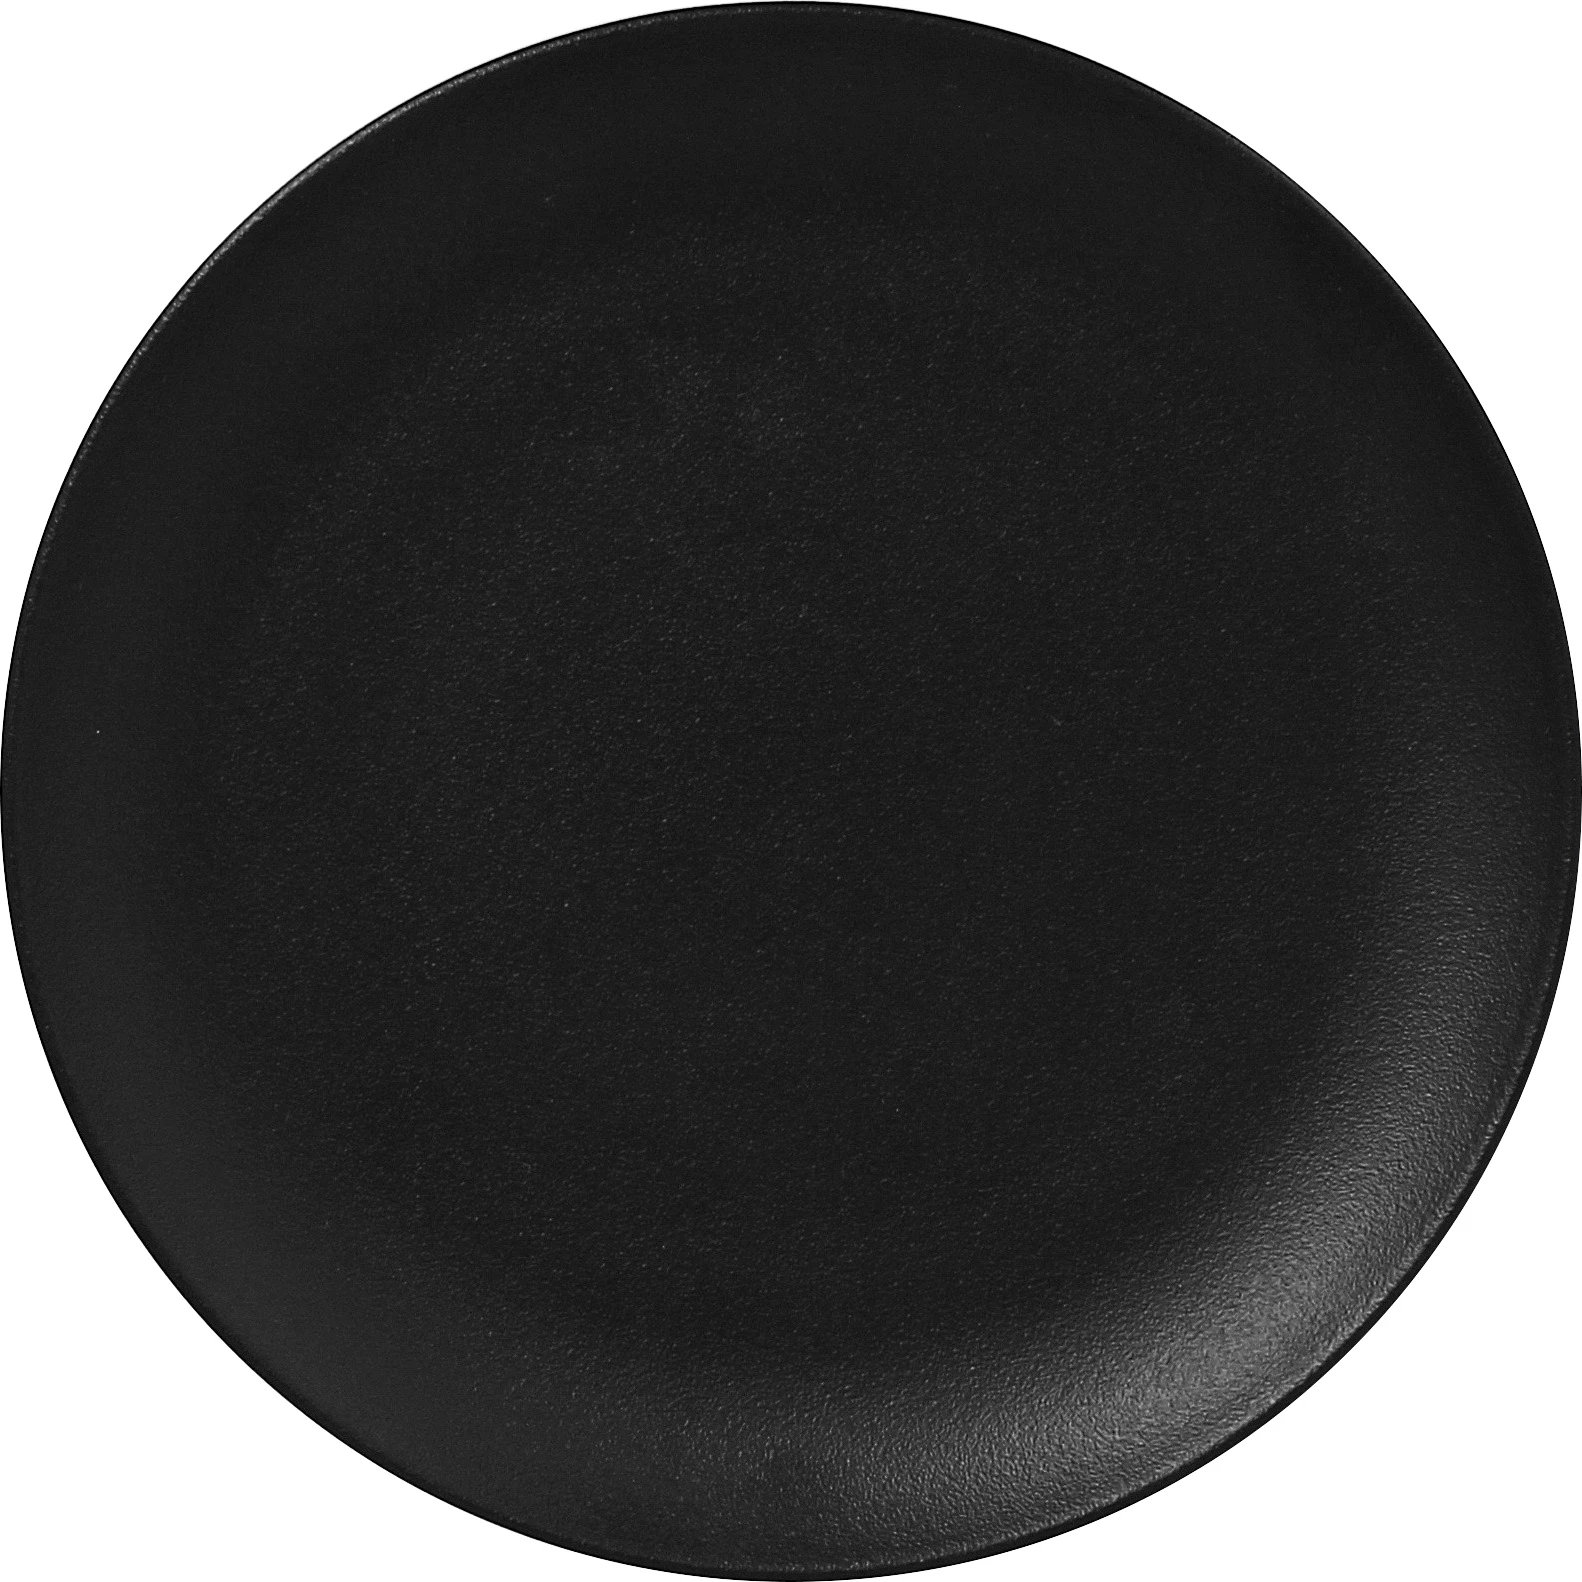 RAK Neofusion flad tallerken uden fane, sort, ø27 cm